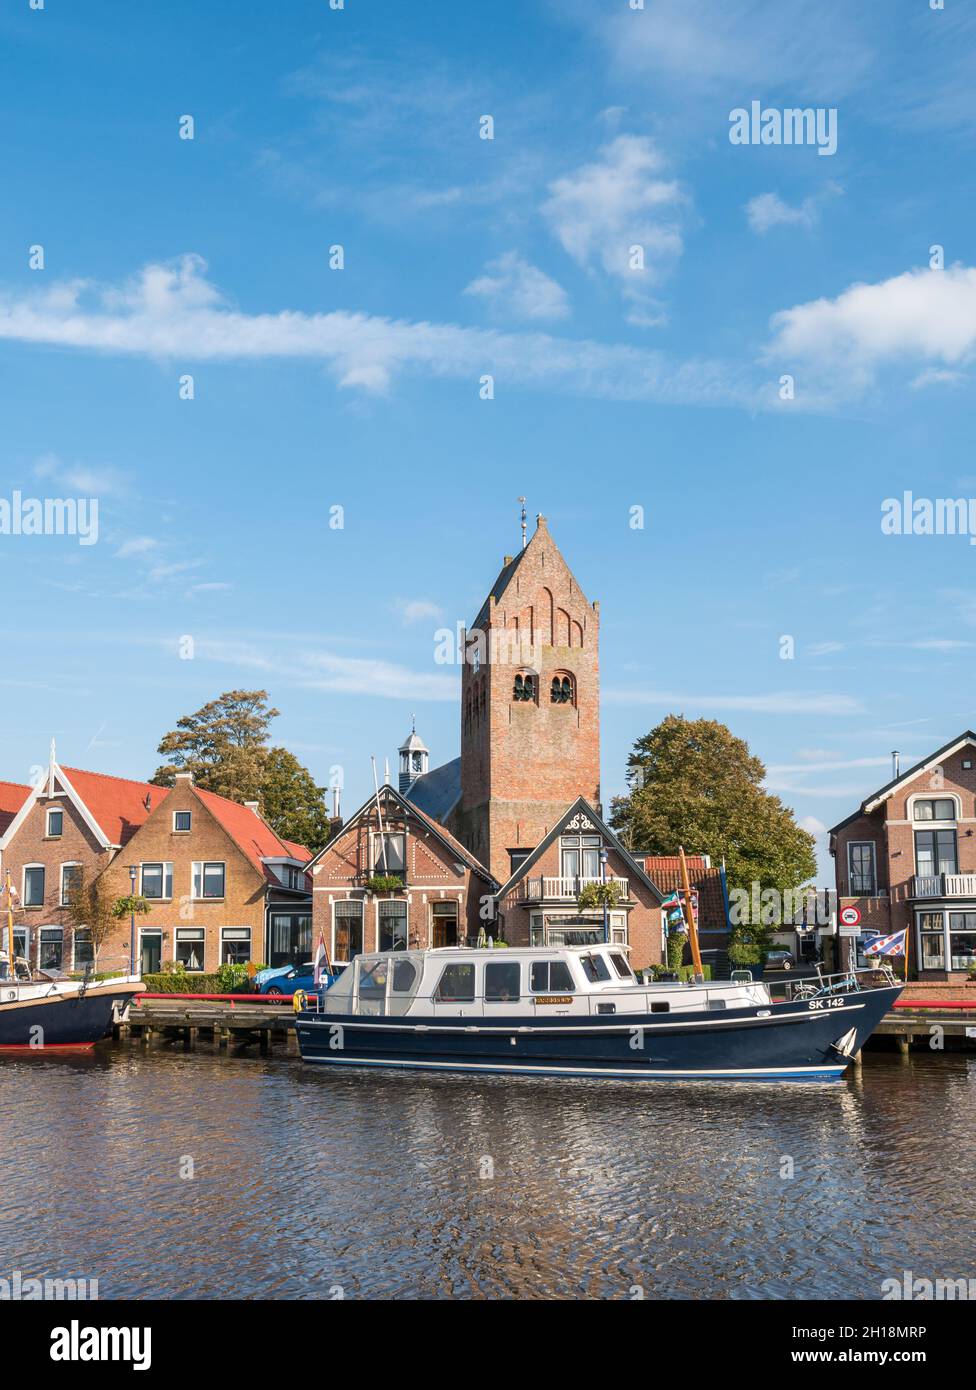 Barche, case e torre della chiesa nel centro storico di Grouw, Frisland, Paesi Bassi Foto Stock